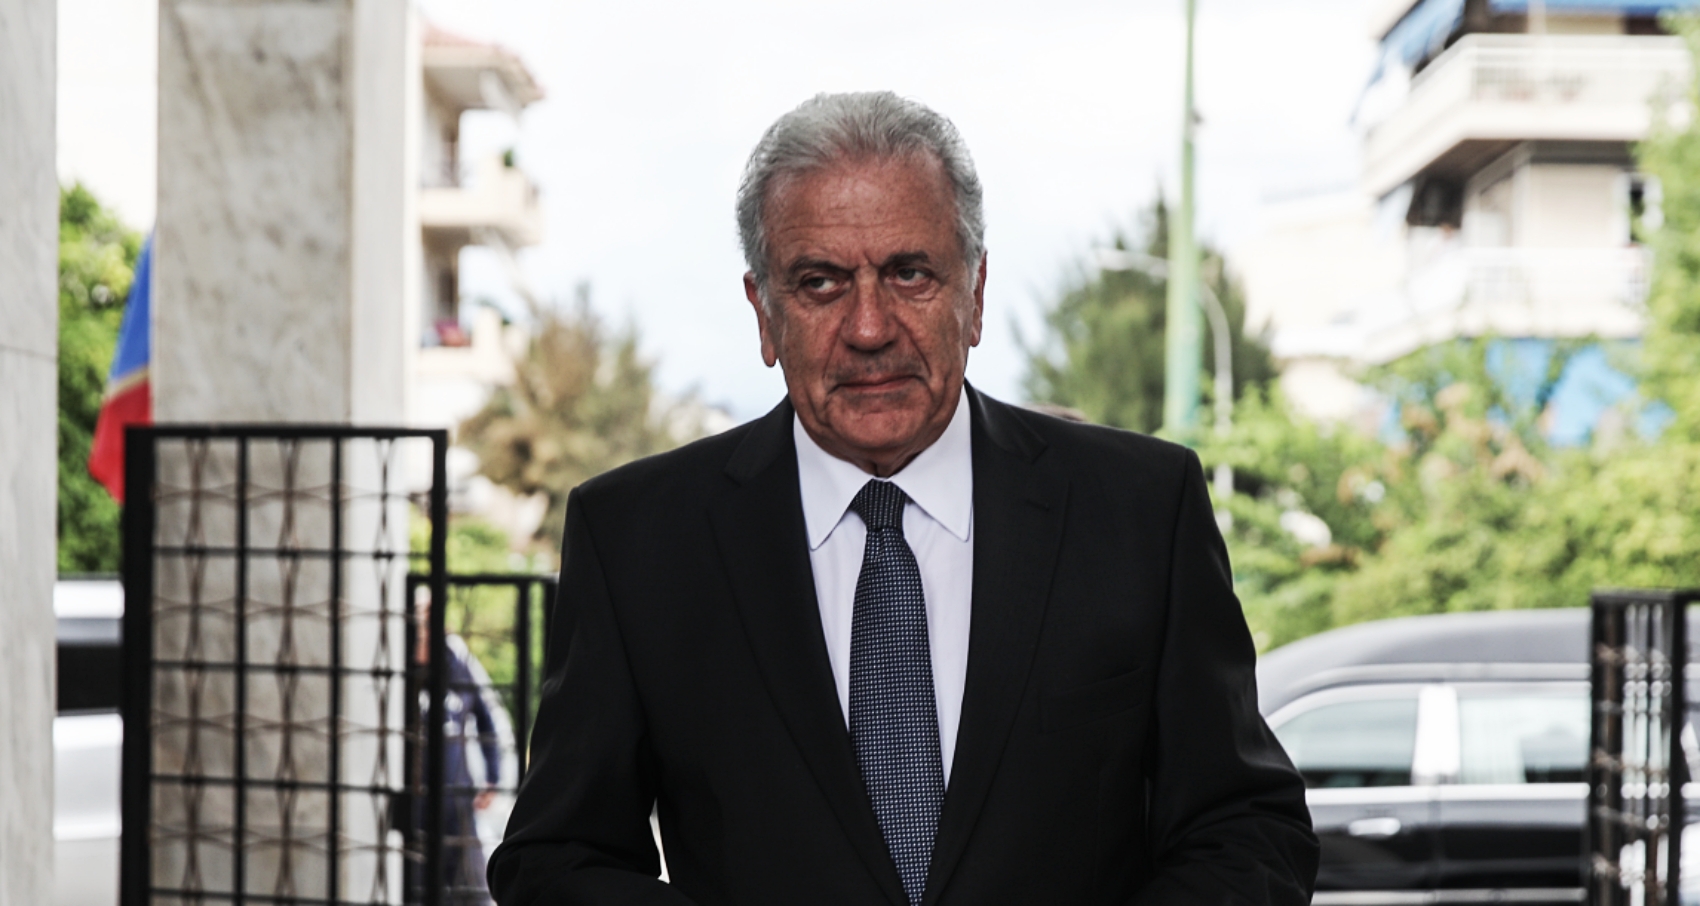 Αβραμόπουλος για Γλύξμπουργκ: “Τον αποχαιρετούμε με τη δέουσα τιμή, θυμάμαι τη συνεργασία μας”